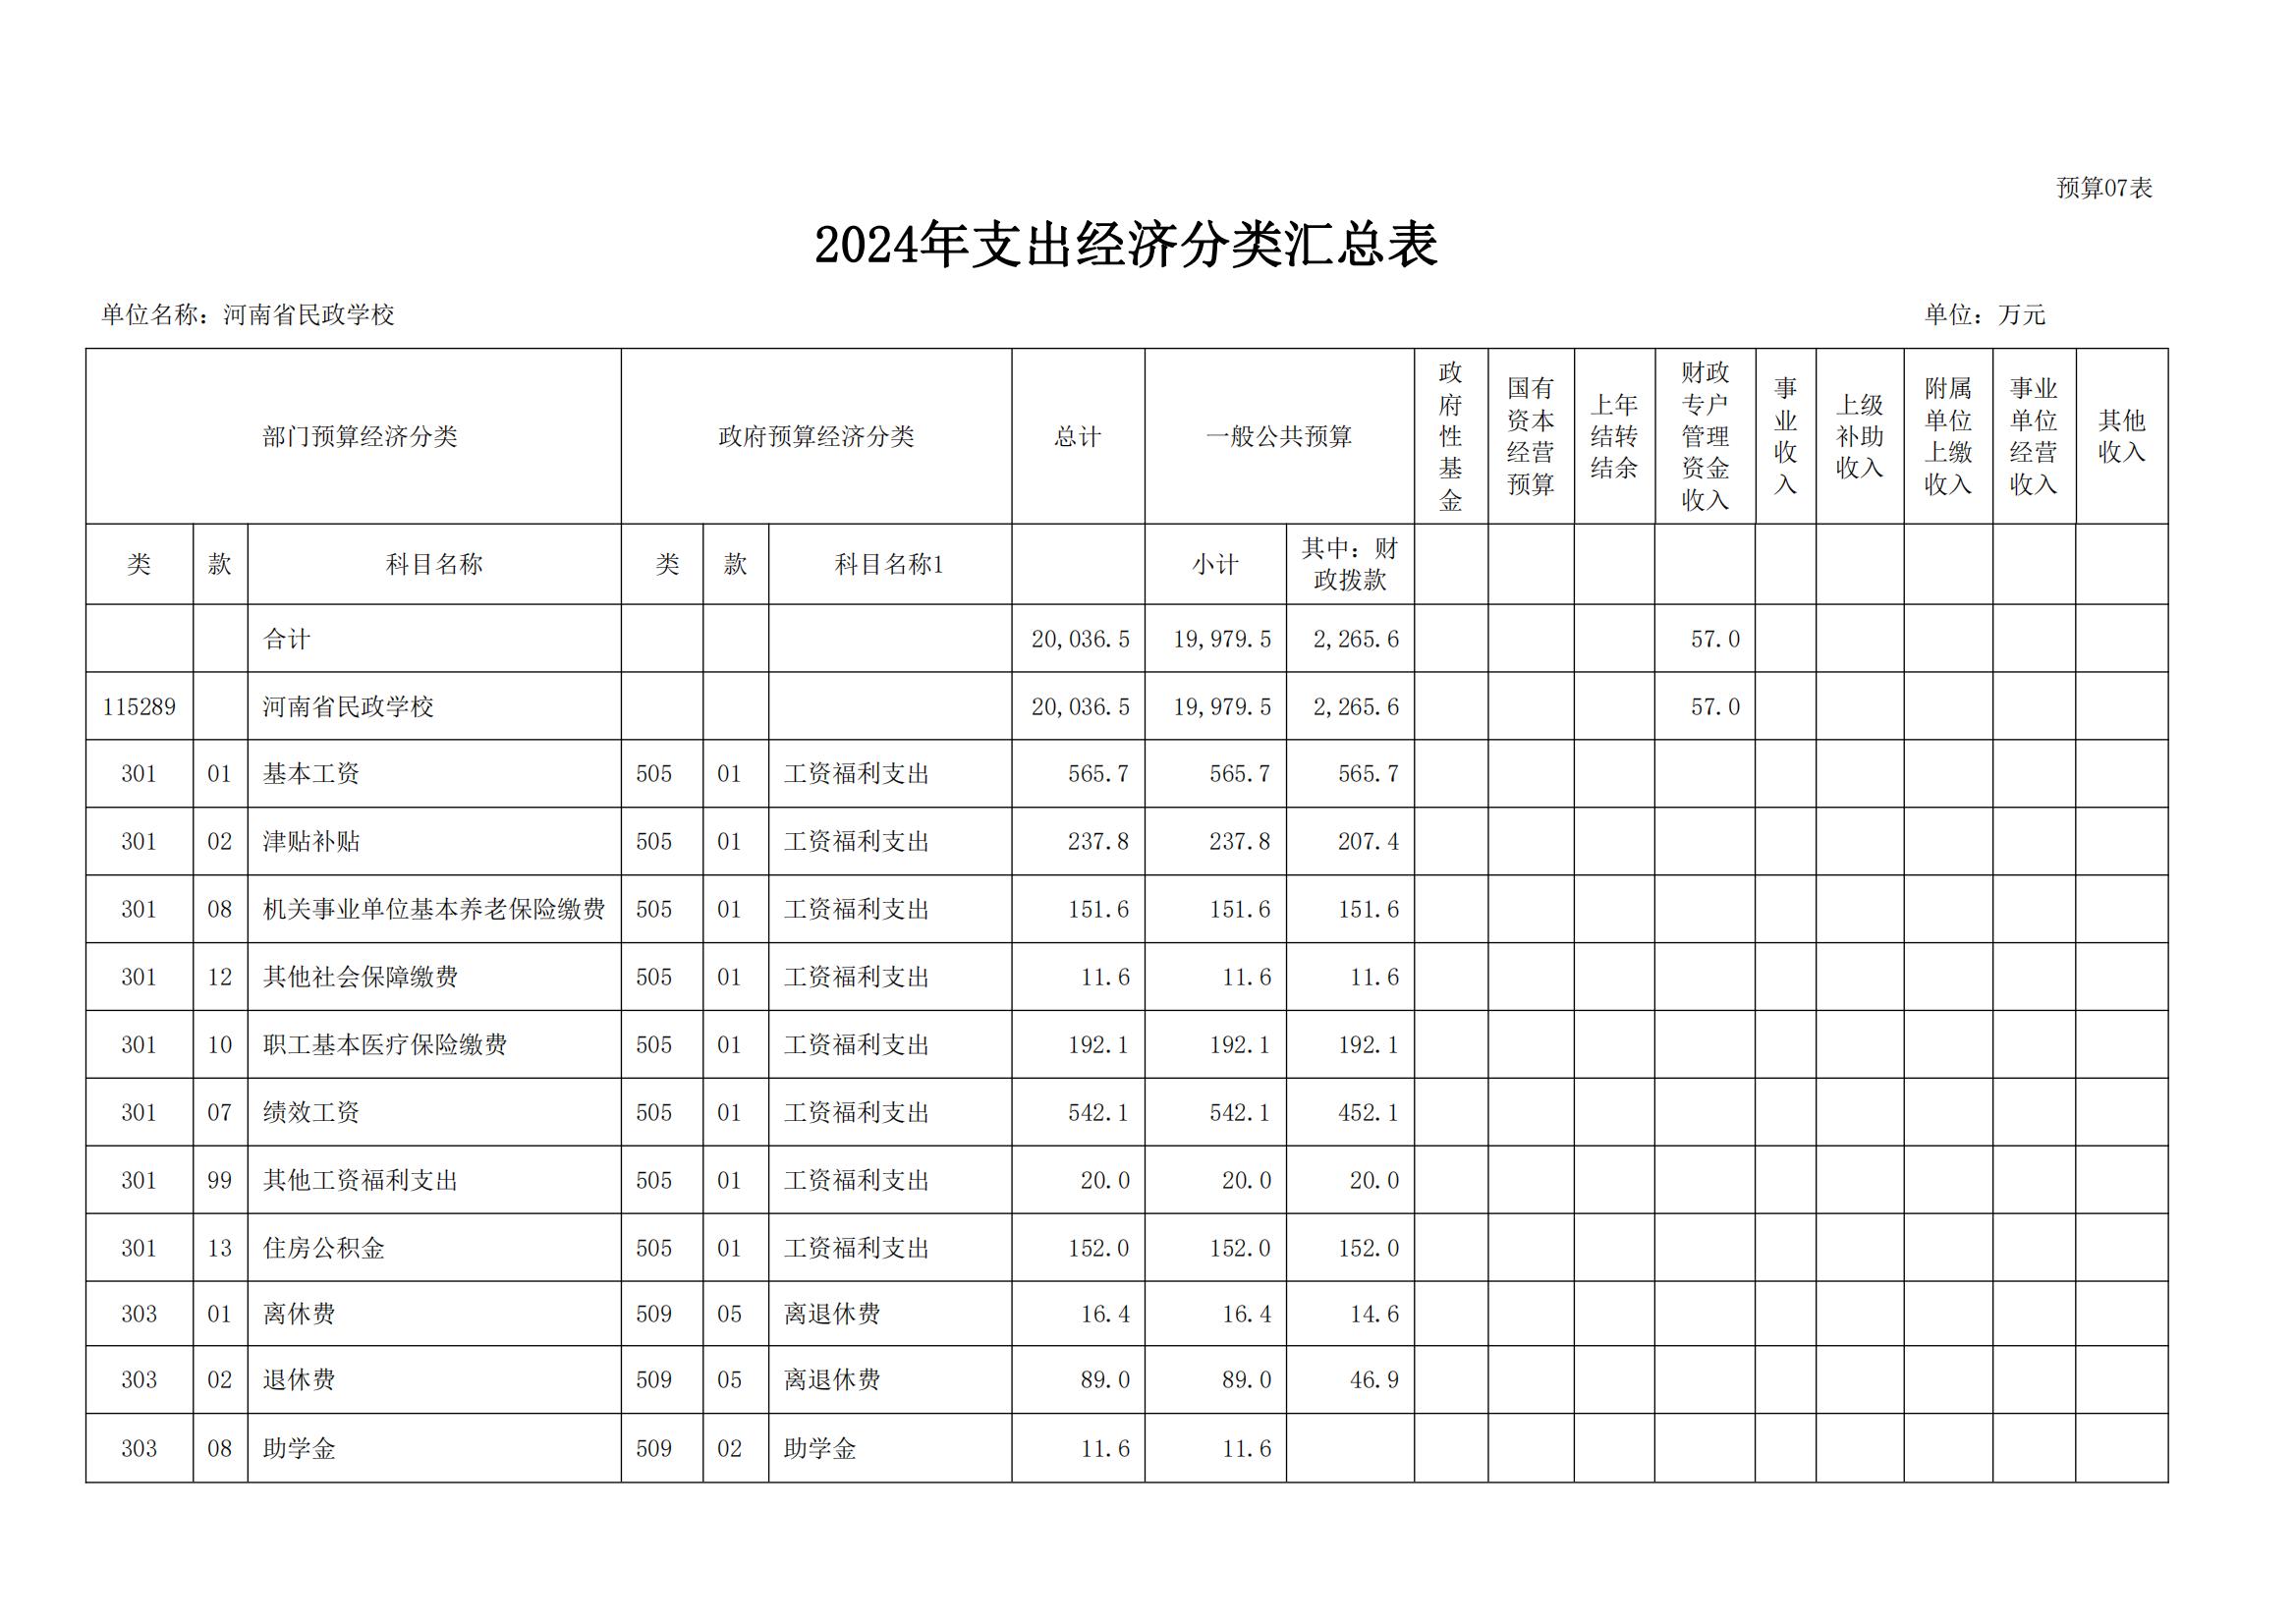 河南省民政学校2024年部门预算公开(1)_16.jpg